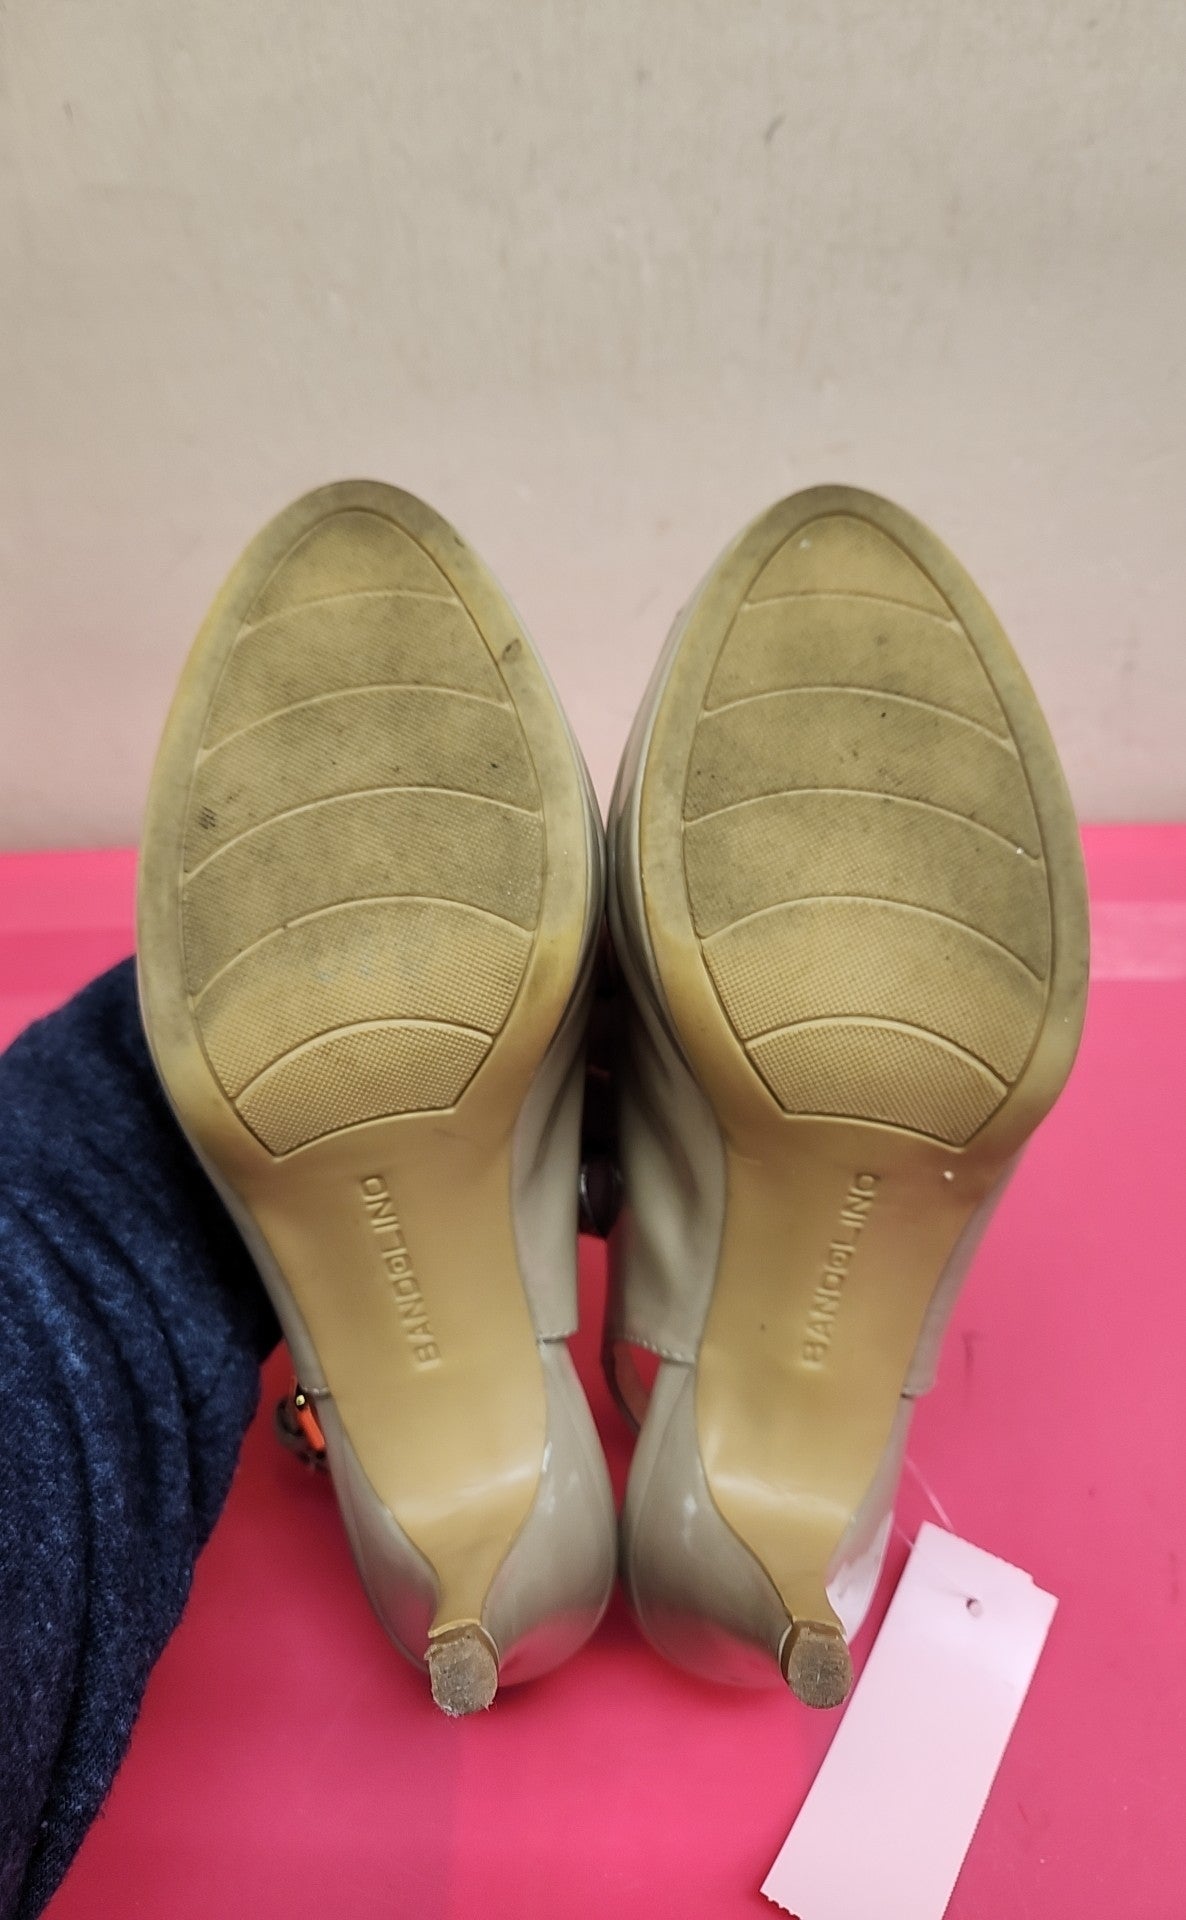 Bandolino Women's Size 6-1/2 Beige Sandals